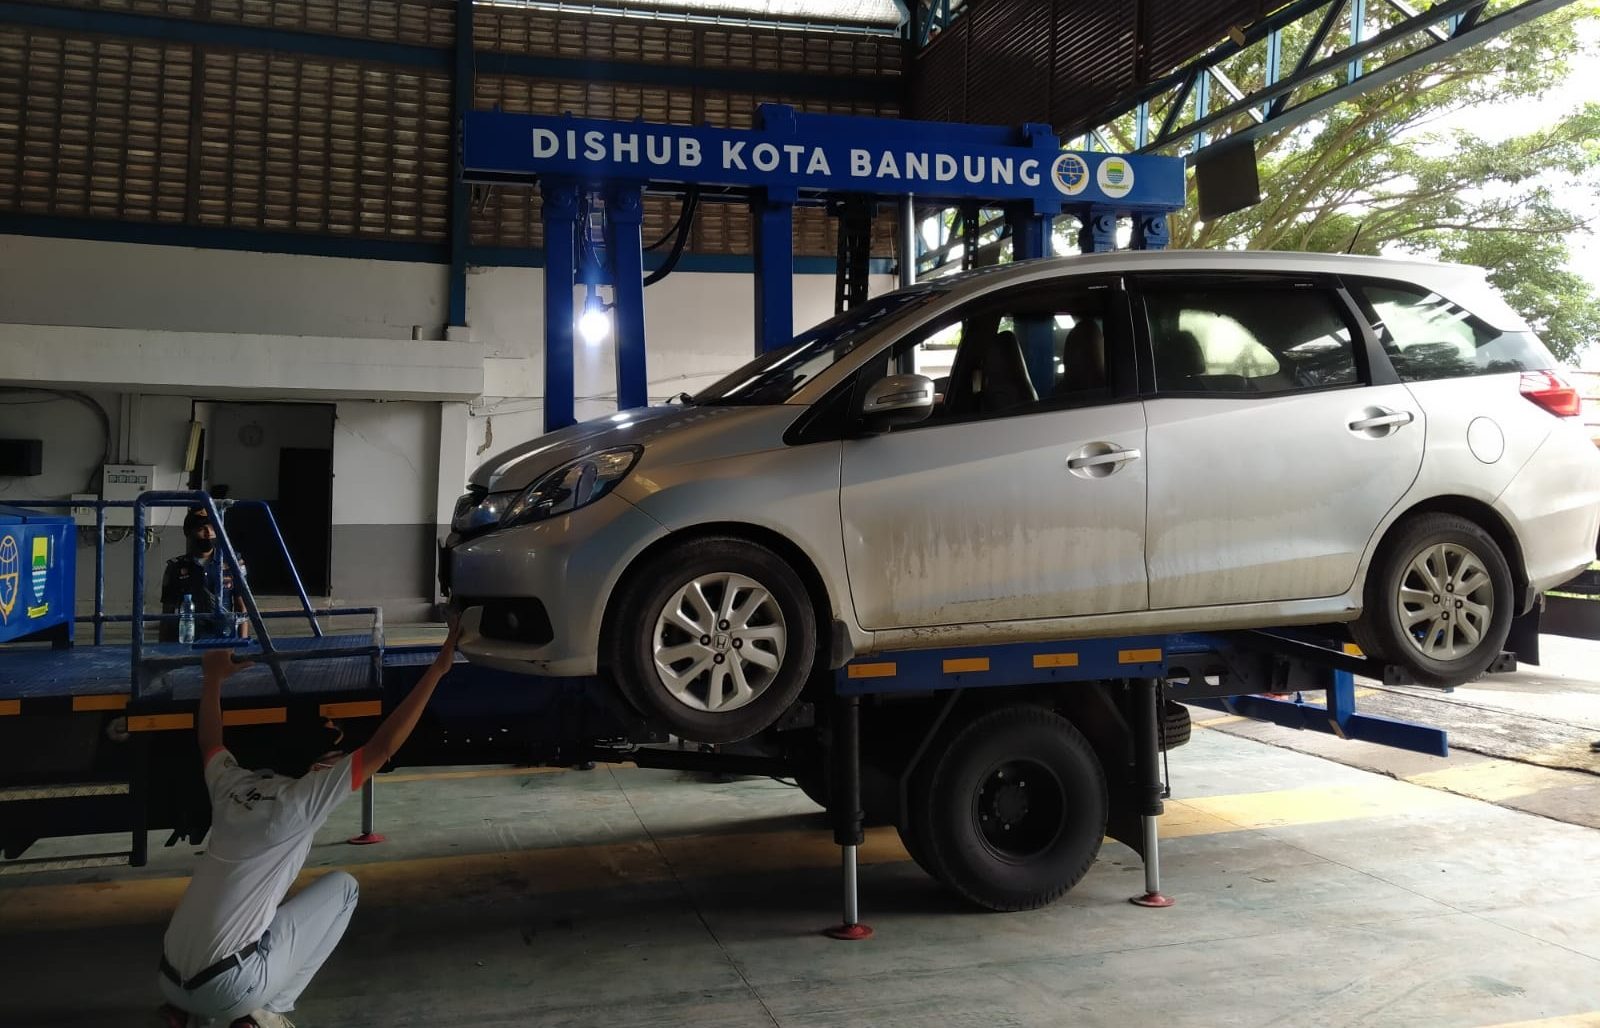 Pertama di Indonesia, Dishub Kota Bandung Hadirkan Mobil Derek Otomatis Hidrolik Untuk Tindak Parkir Mobil Sembarangan